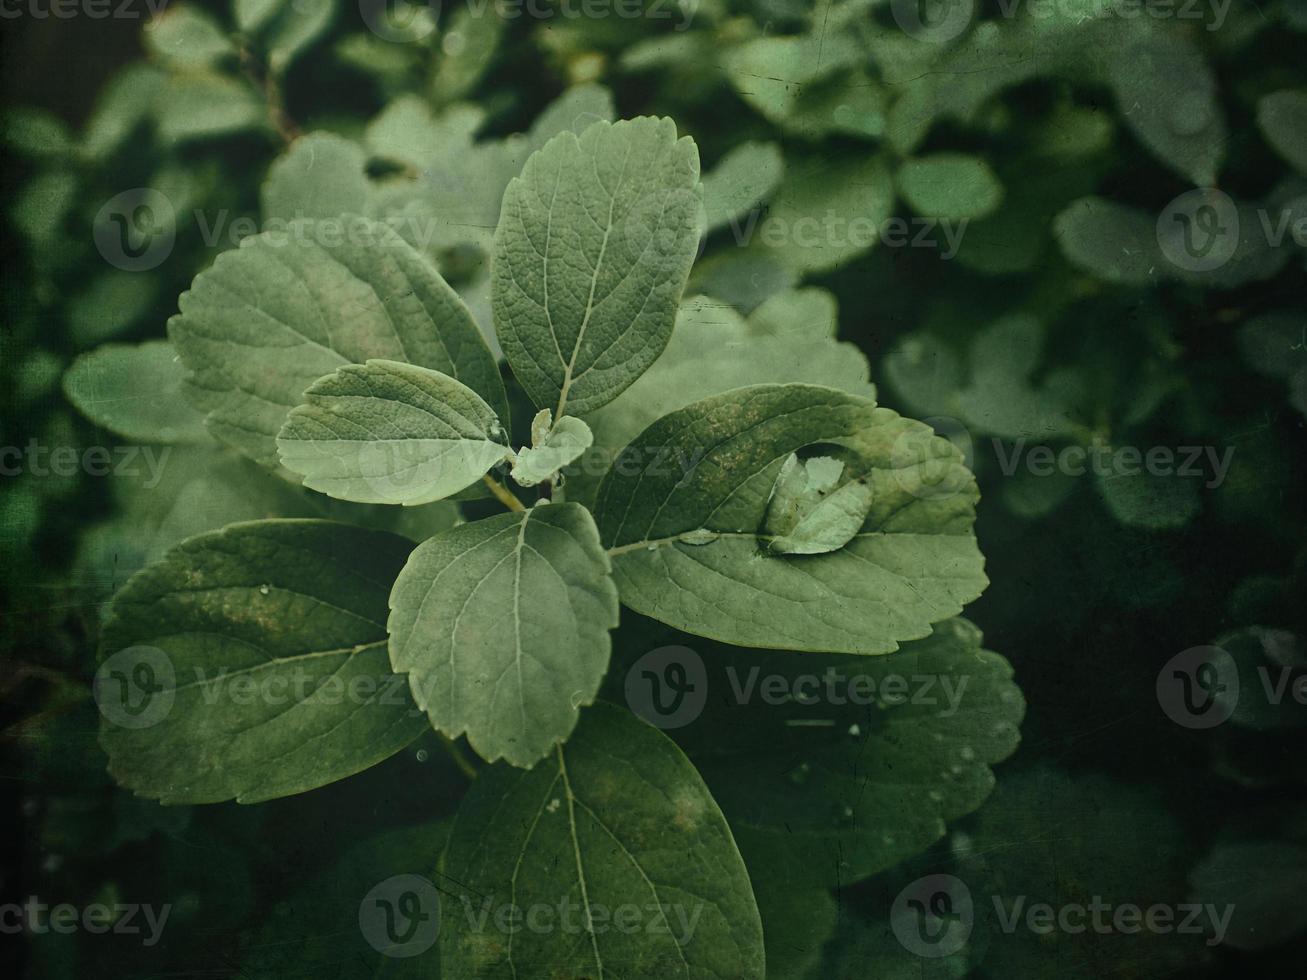 sommar växt med regndroppar på grön löv foto